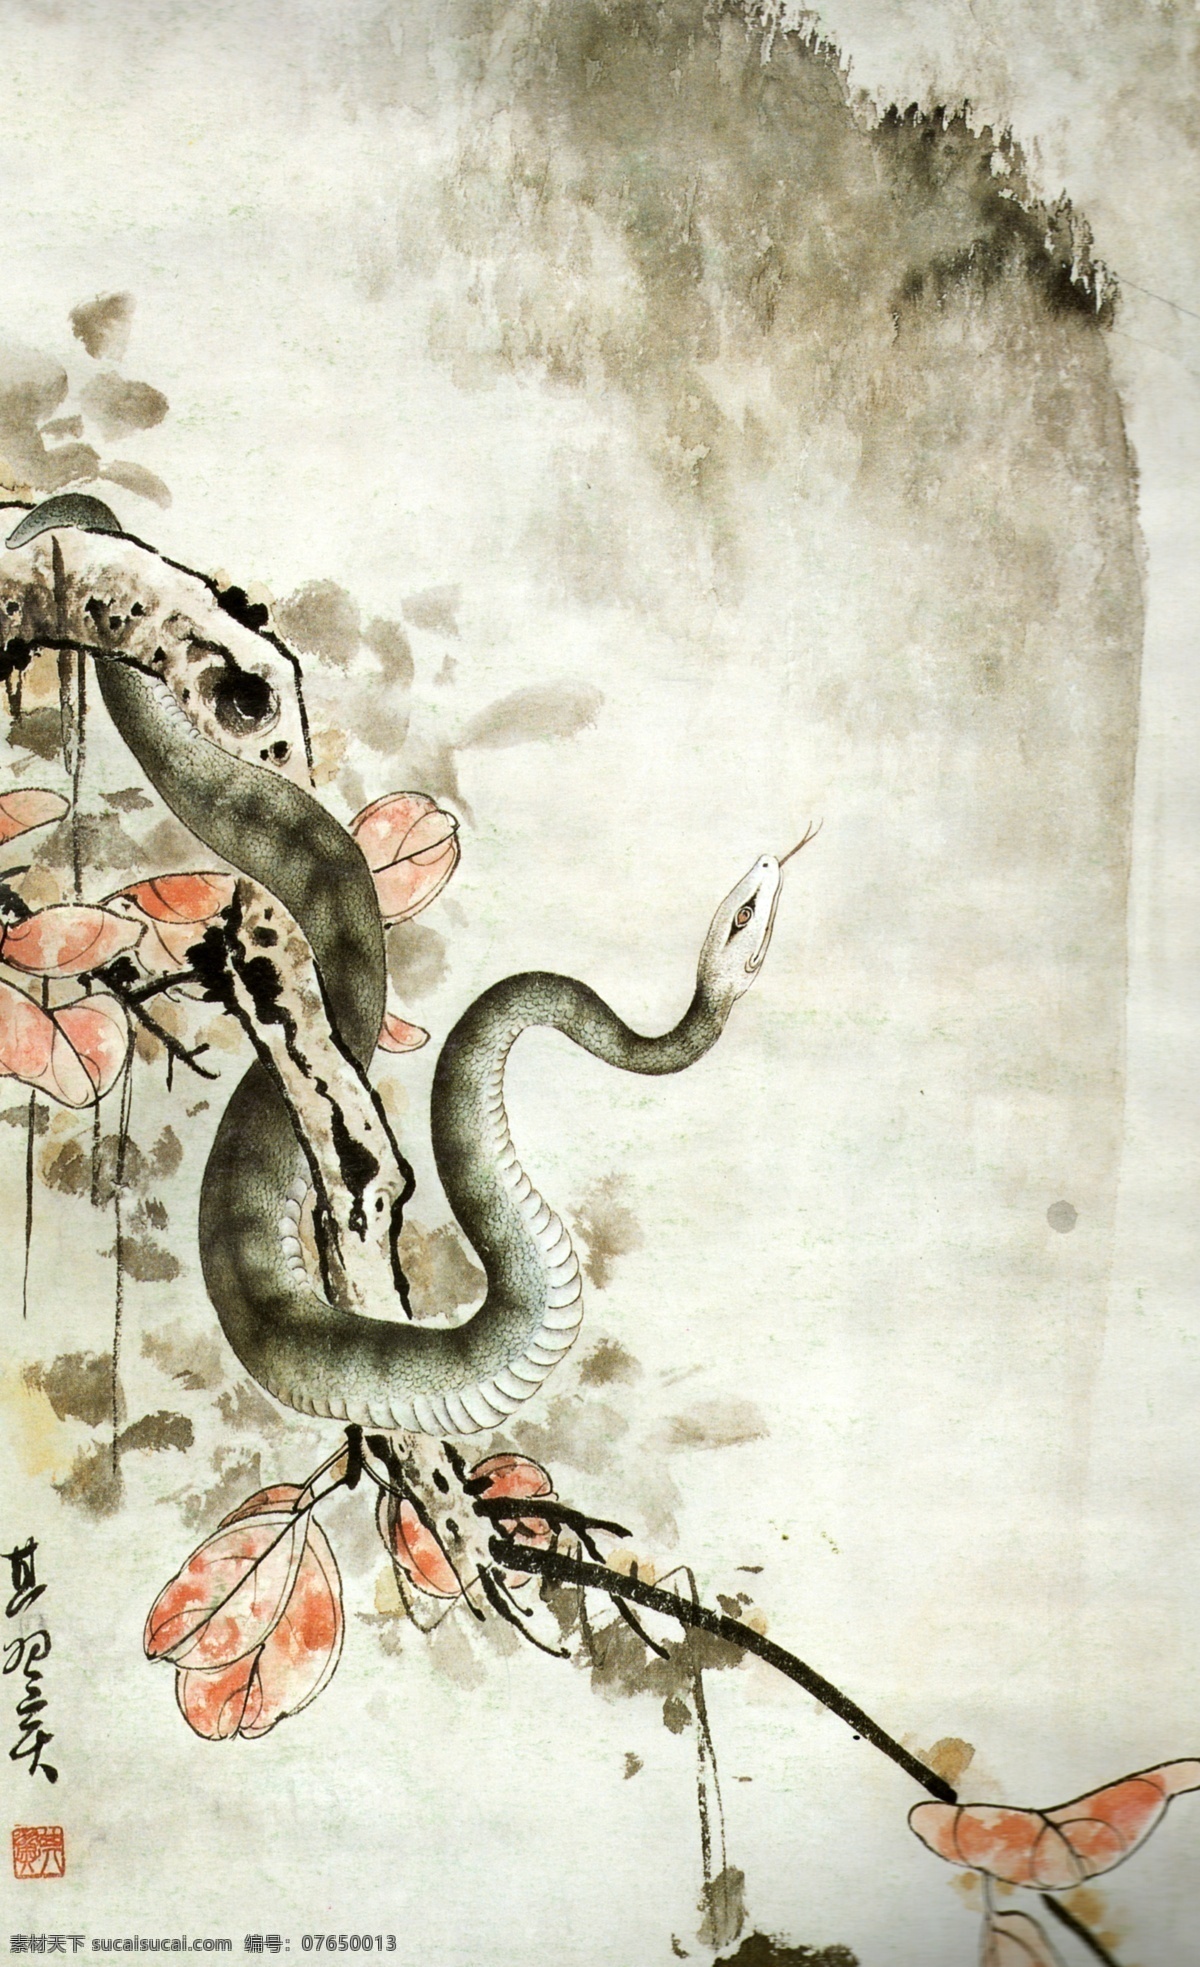 中国 水墨画 彩墨 红叶 画卷 绘画书法 山水画集 蛇 树枝 中国水墨画 印章 水墨 文化艺术 家居装饰素材 雕刻 图案